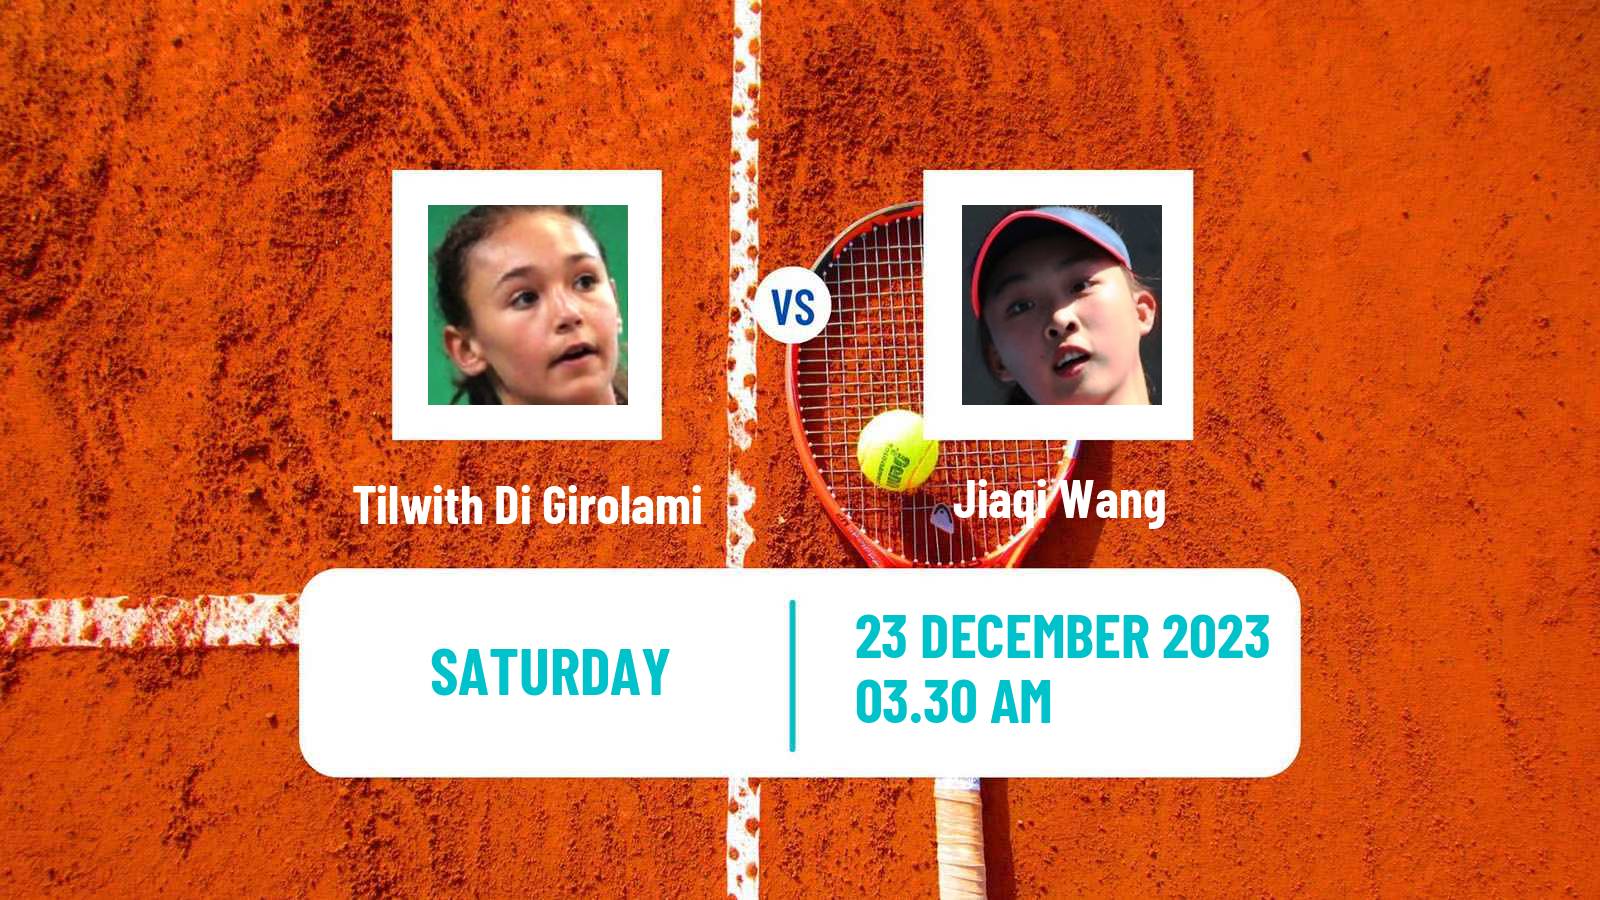 Tennis ITF W15 Monastir 43 Women Tilwith Di Girolami - Jiaqi Wang